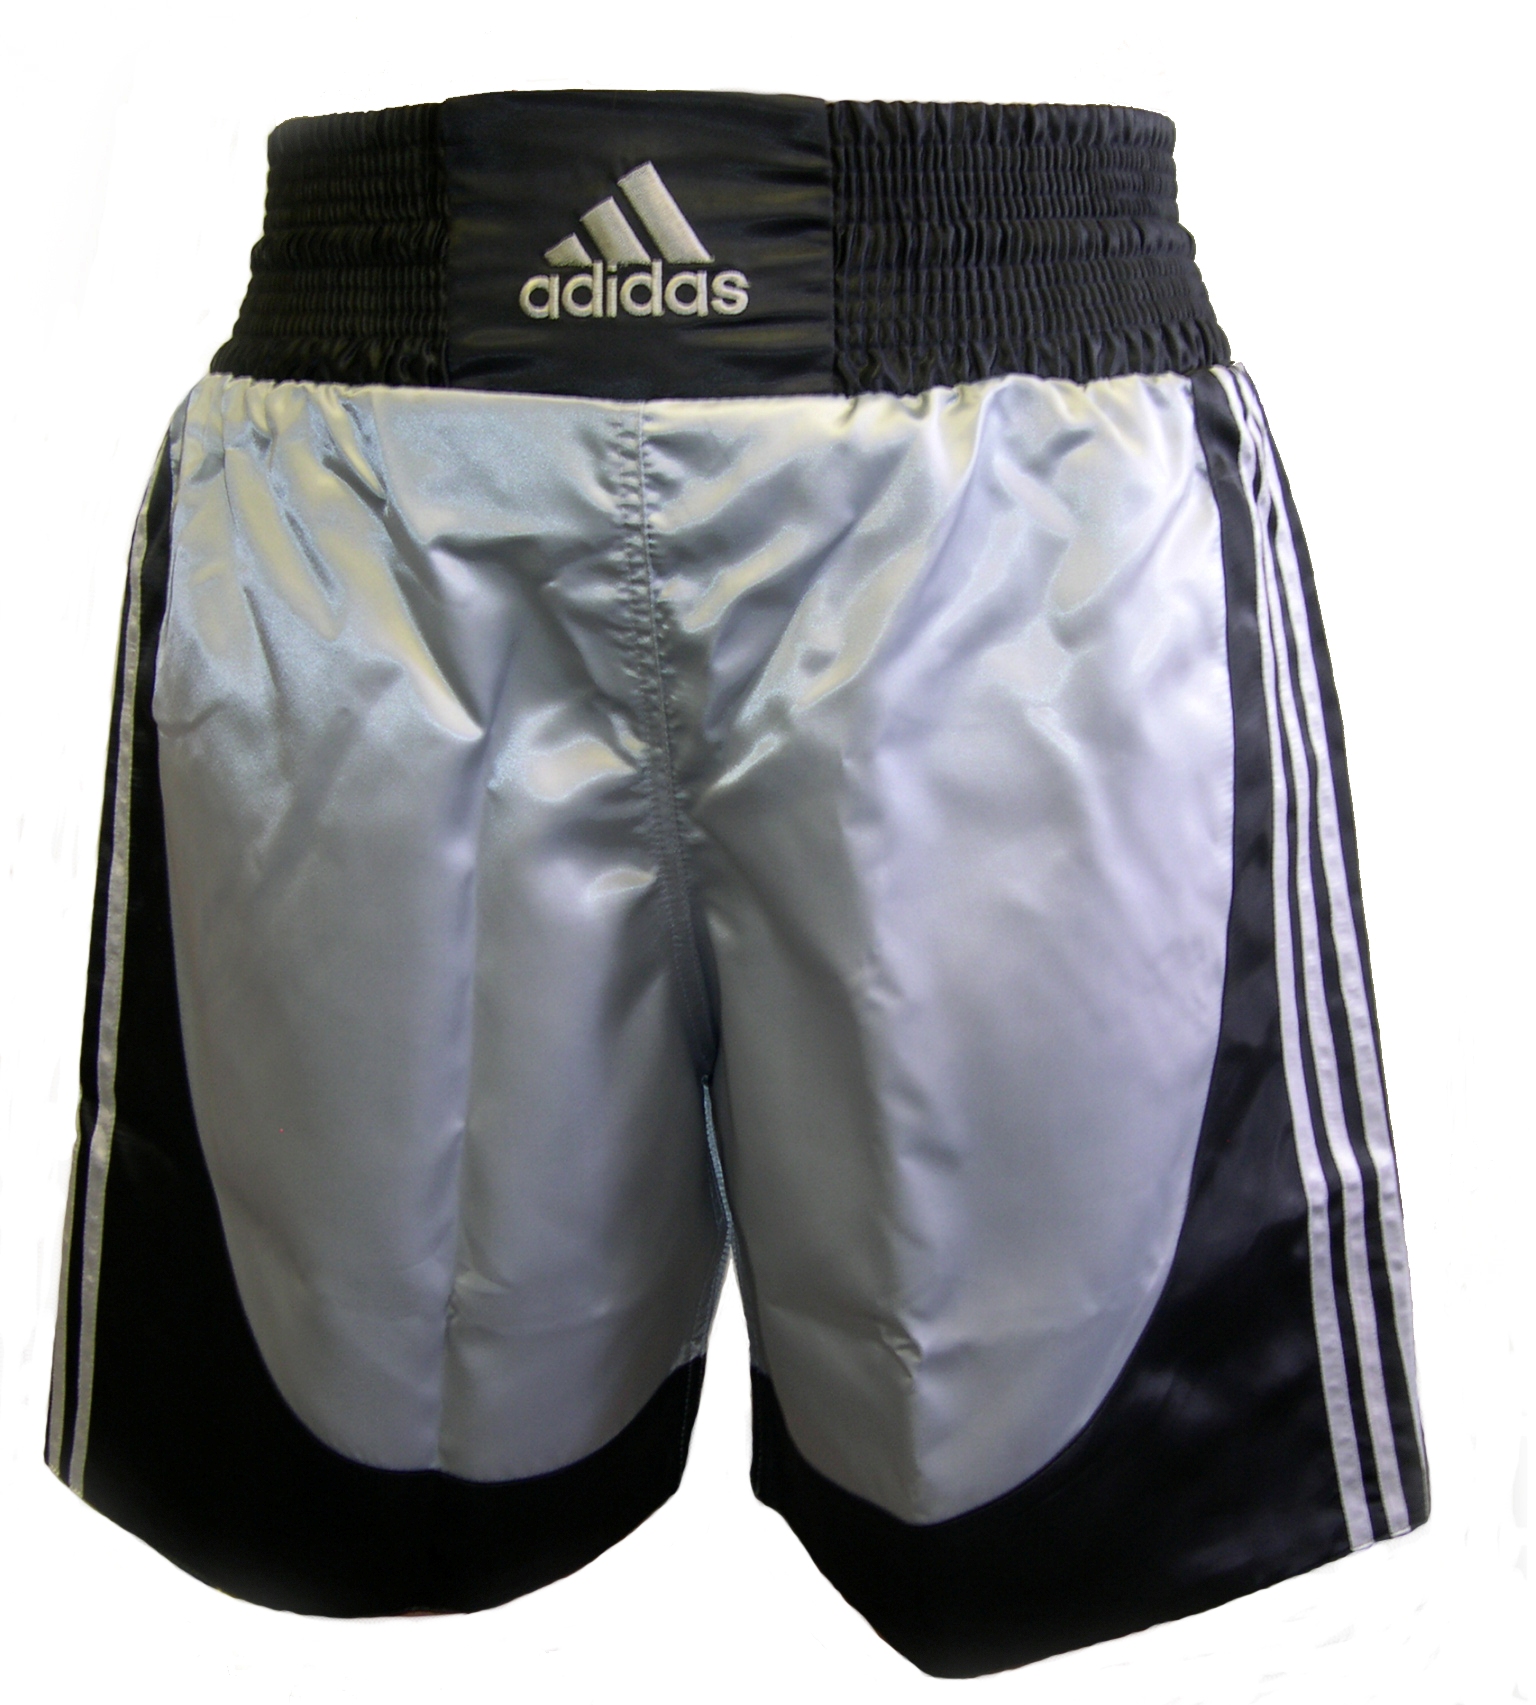 adidas satin boxing shorts